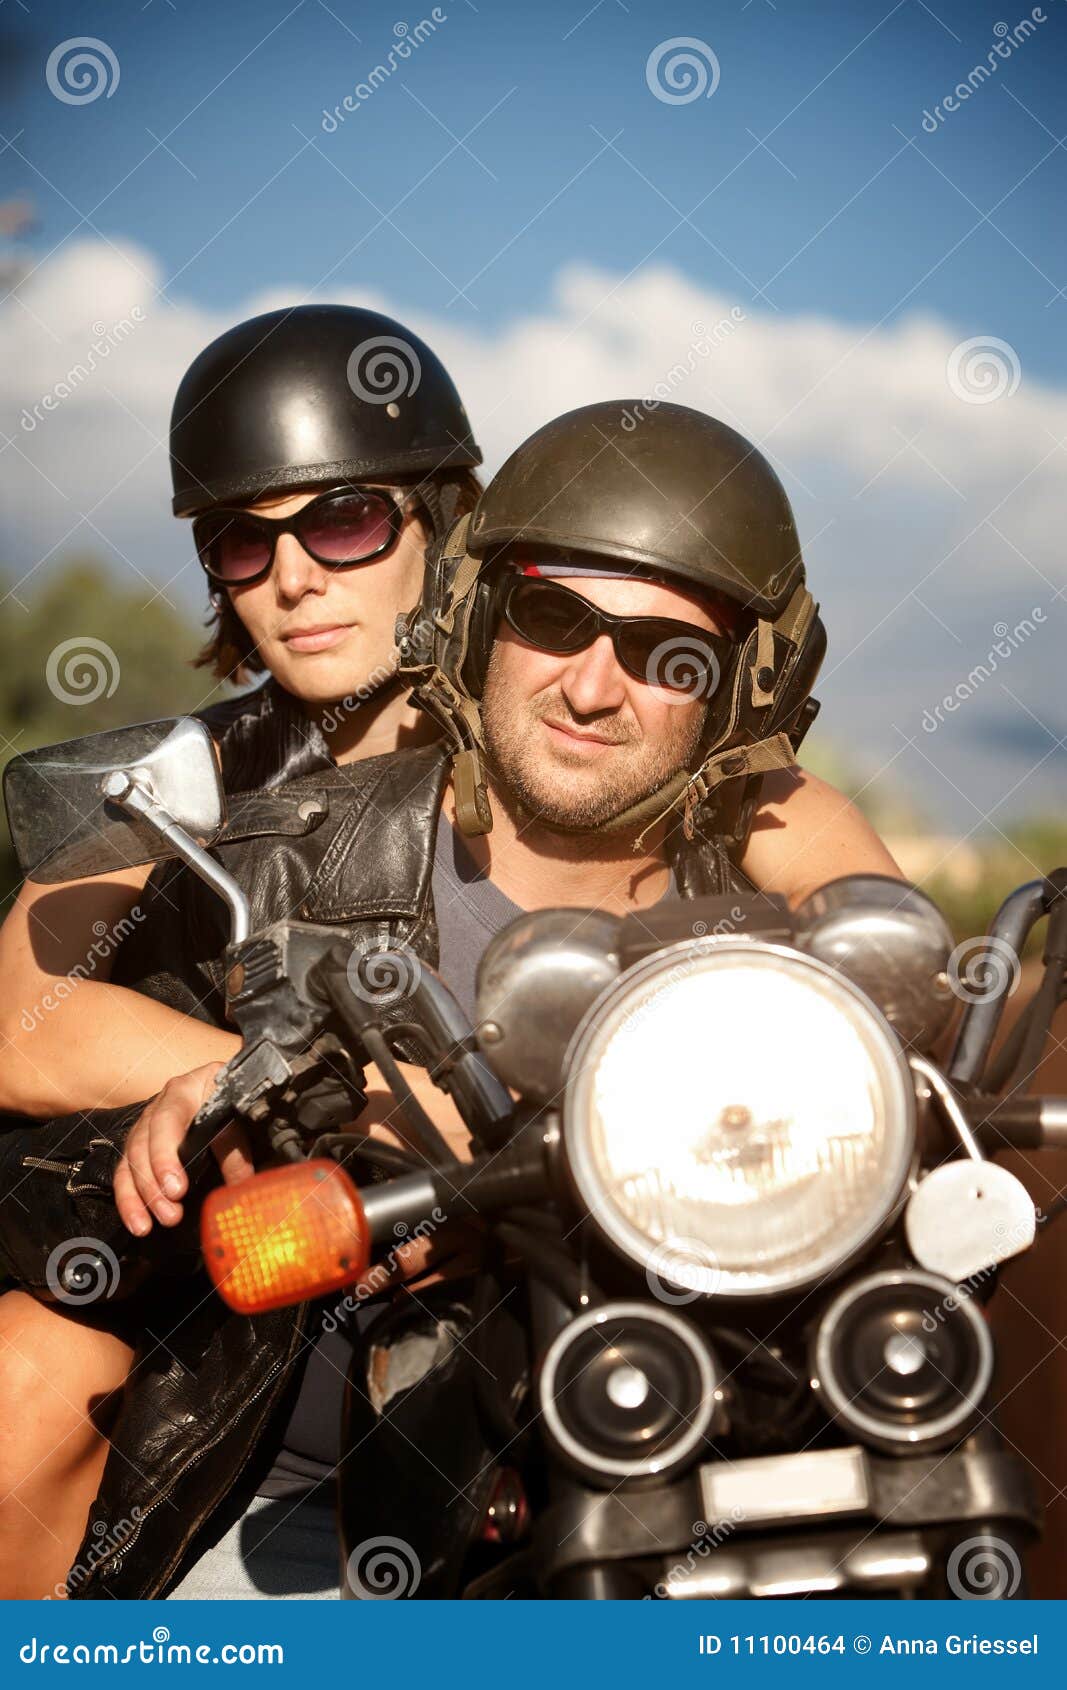 Équitation D'homme Et De Femme De Motard Sur La Moto Image stock